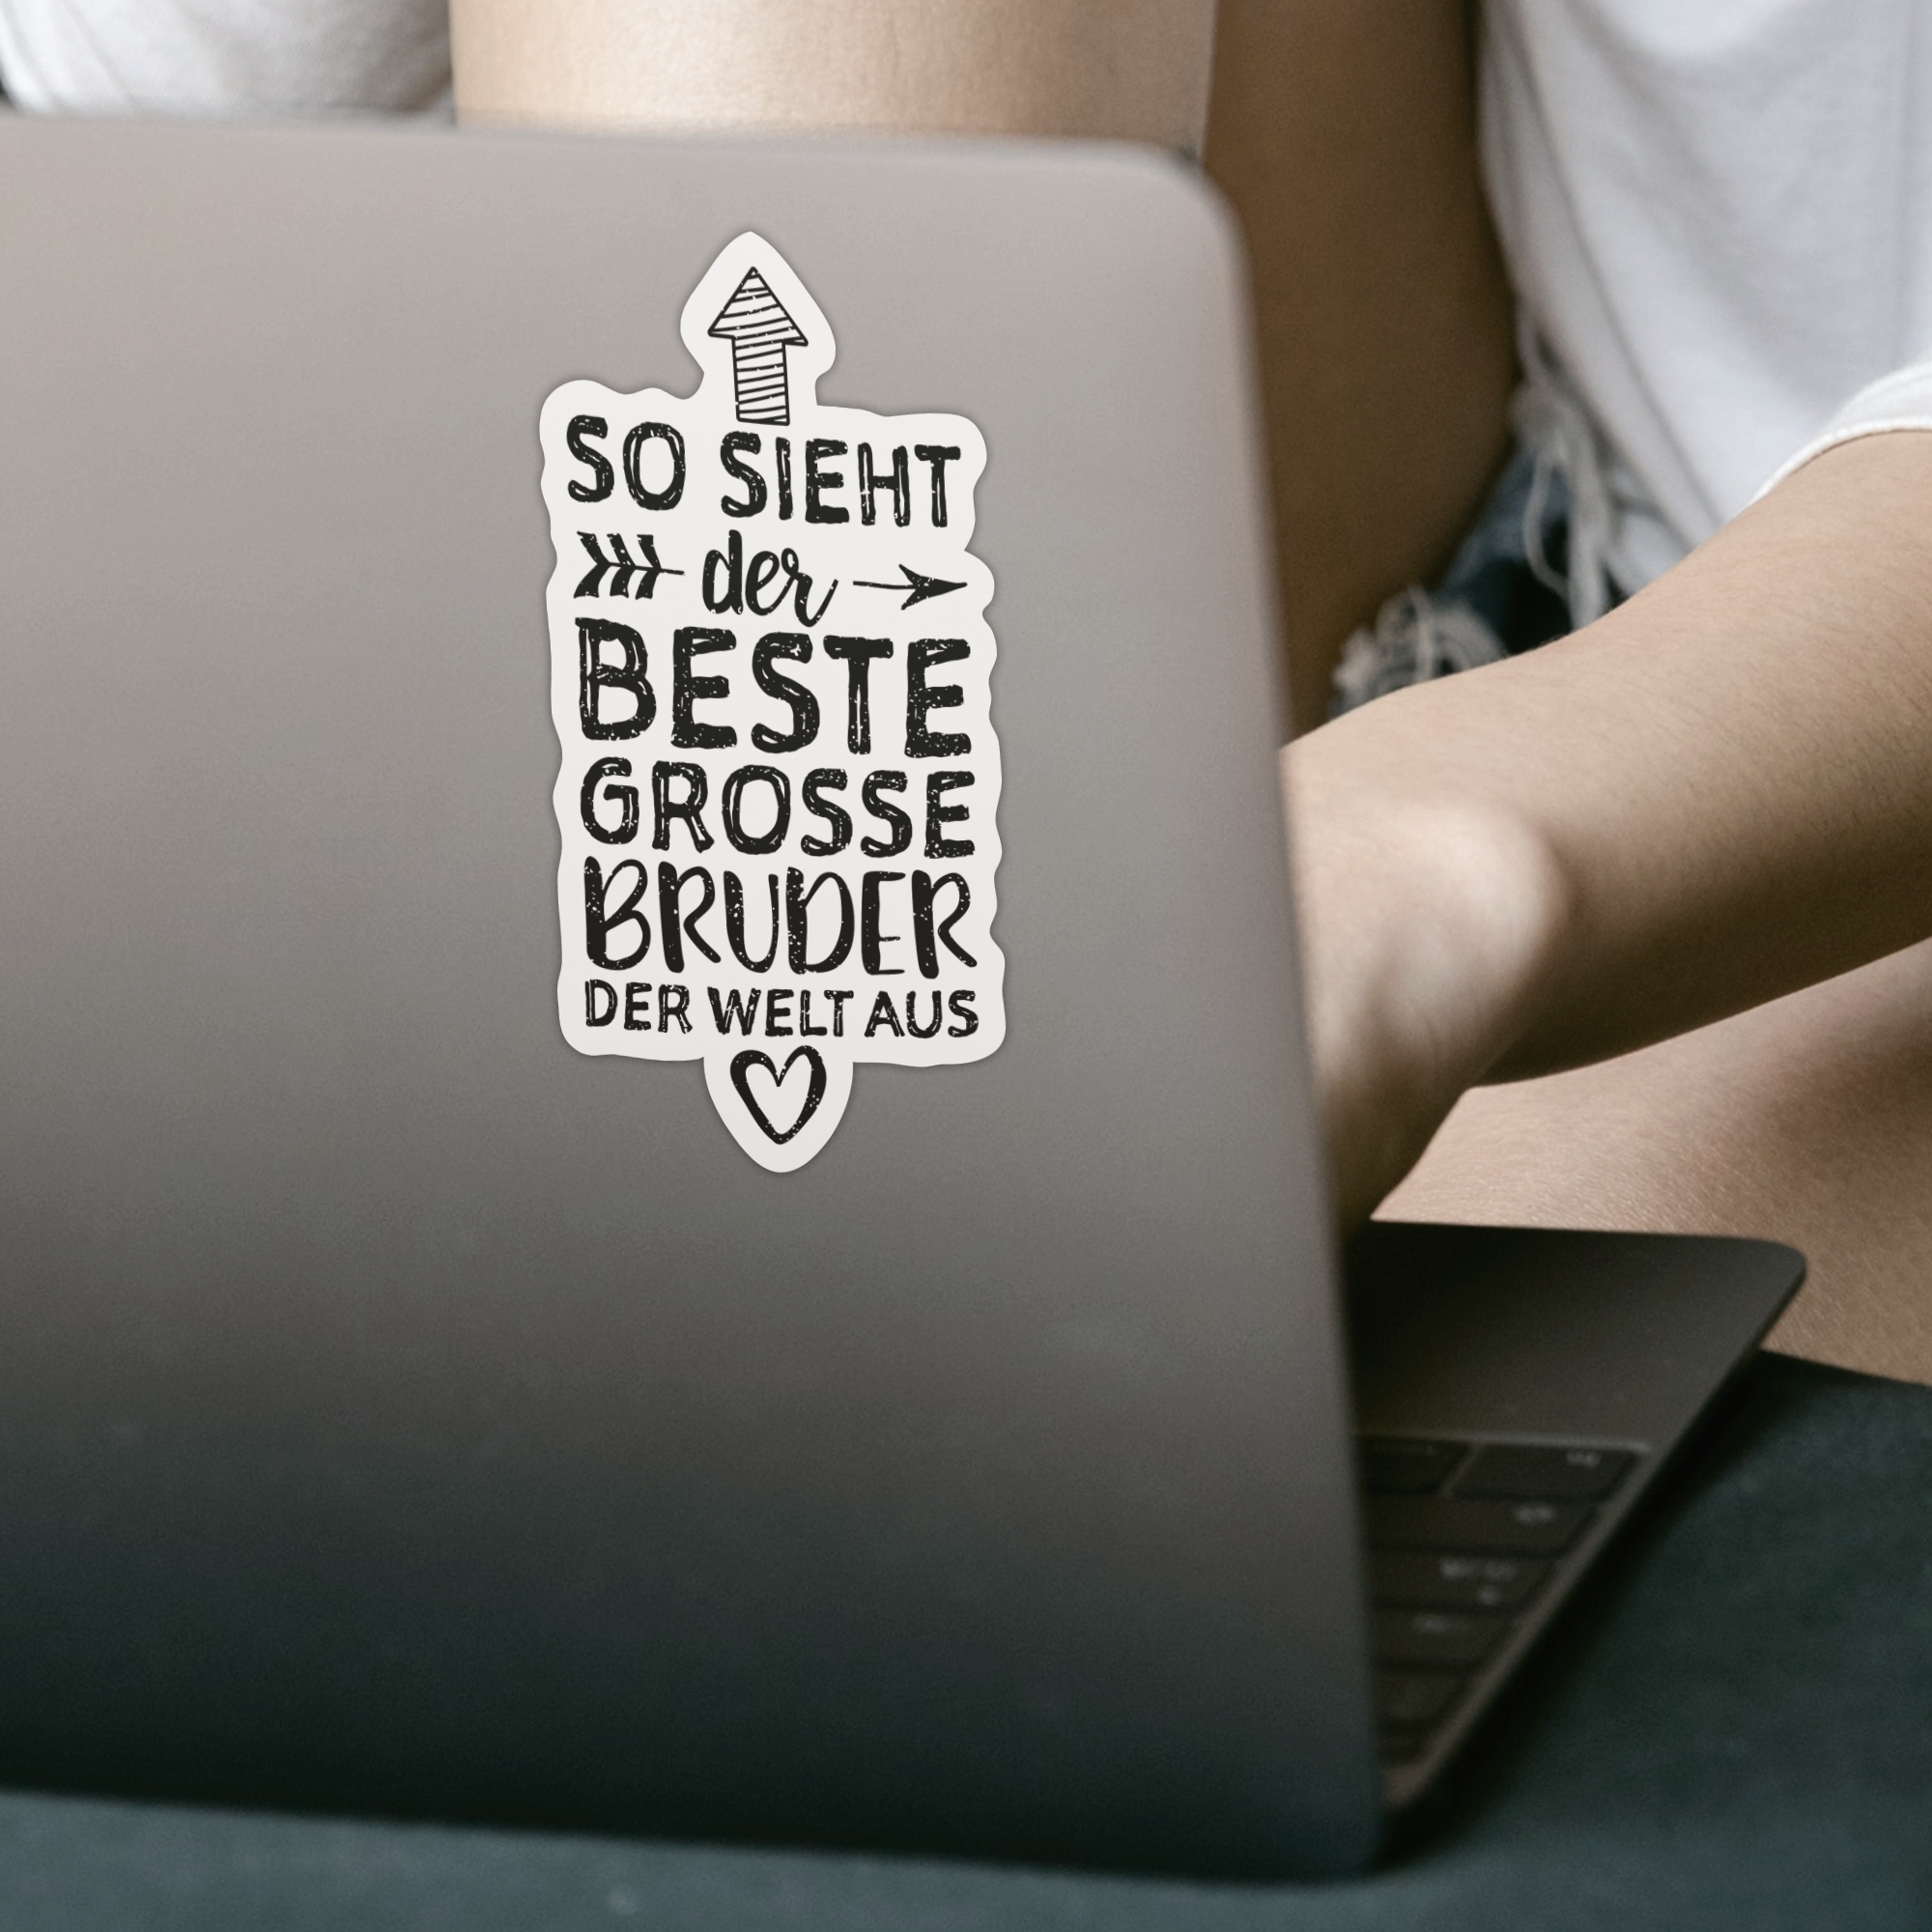 So Sieht Der Beste Große Bruder Der Welt Aus Sticker - DESIGNSBYJNK5.COM